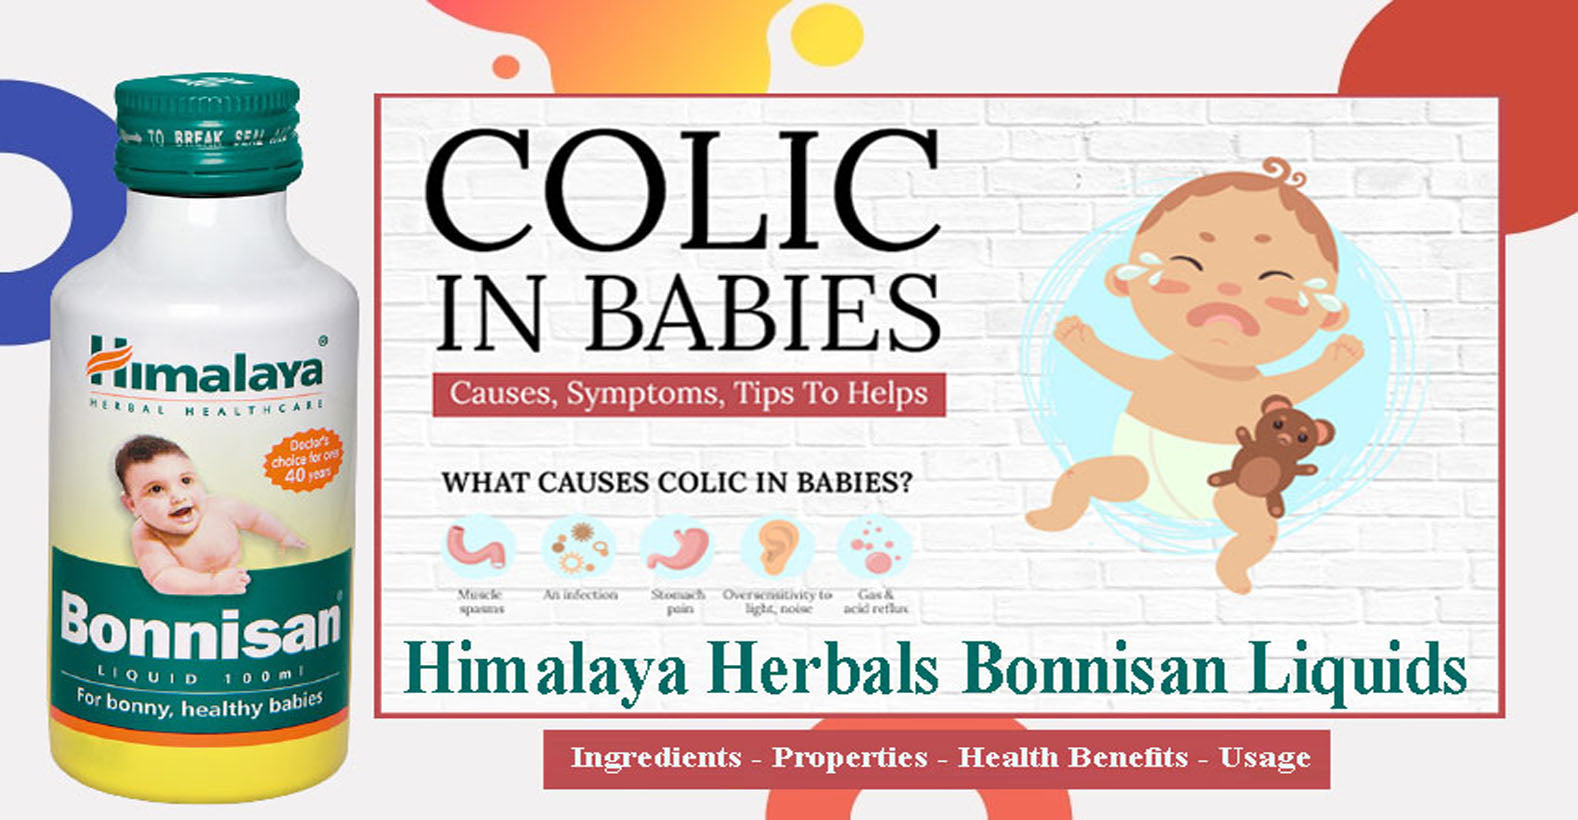 Himalaya Herbals Bonnisan Liquid - Ingredients, Properties, Health Benefits, Usage